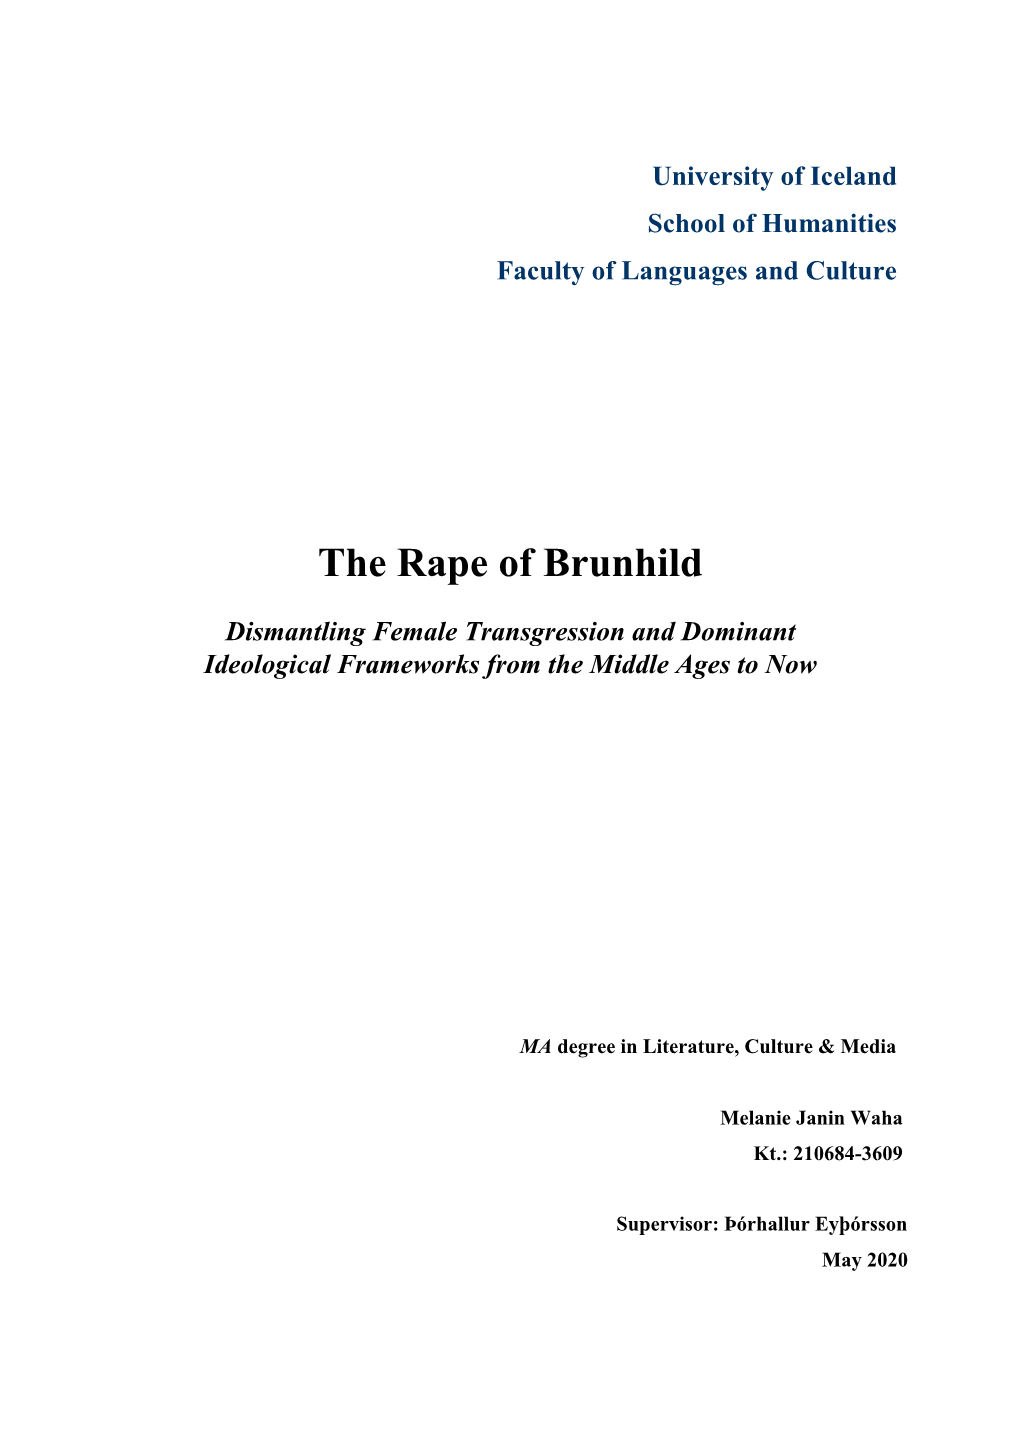 The Rape of Brunhild